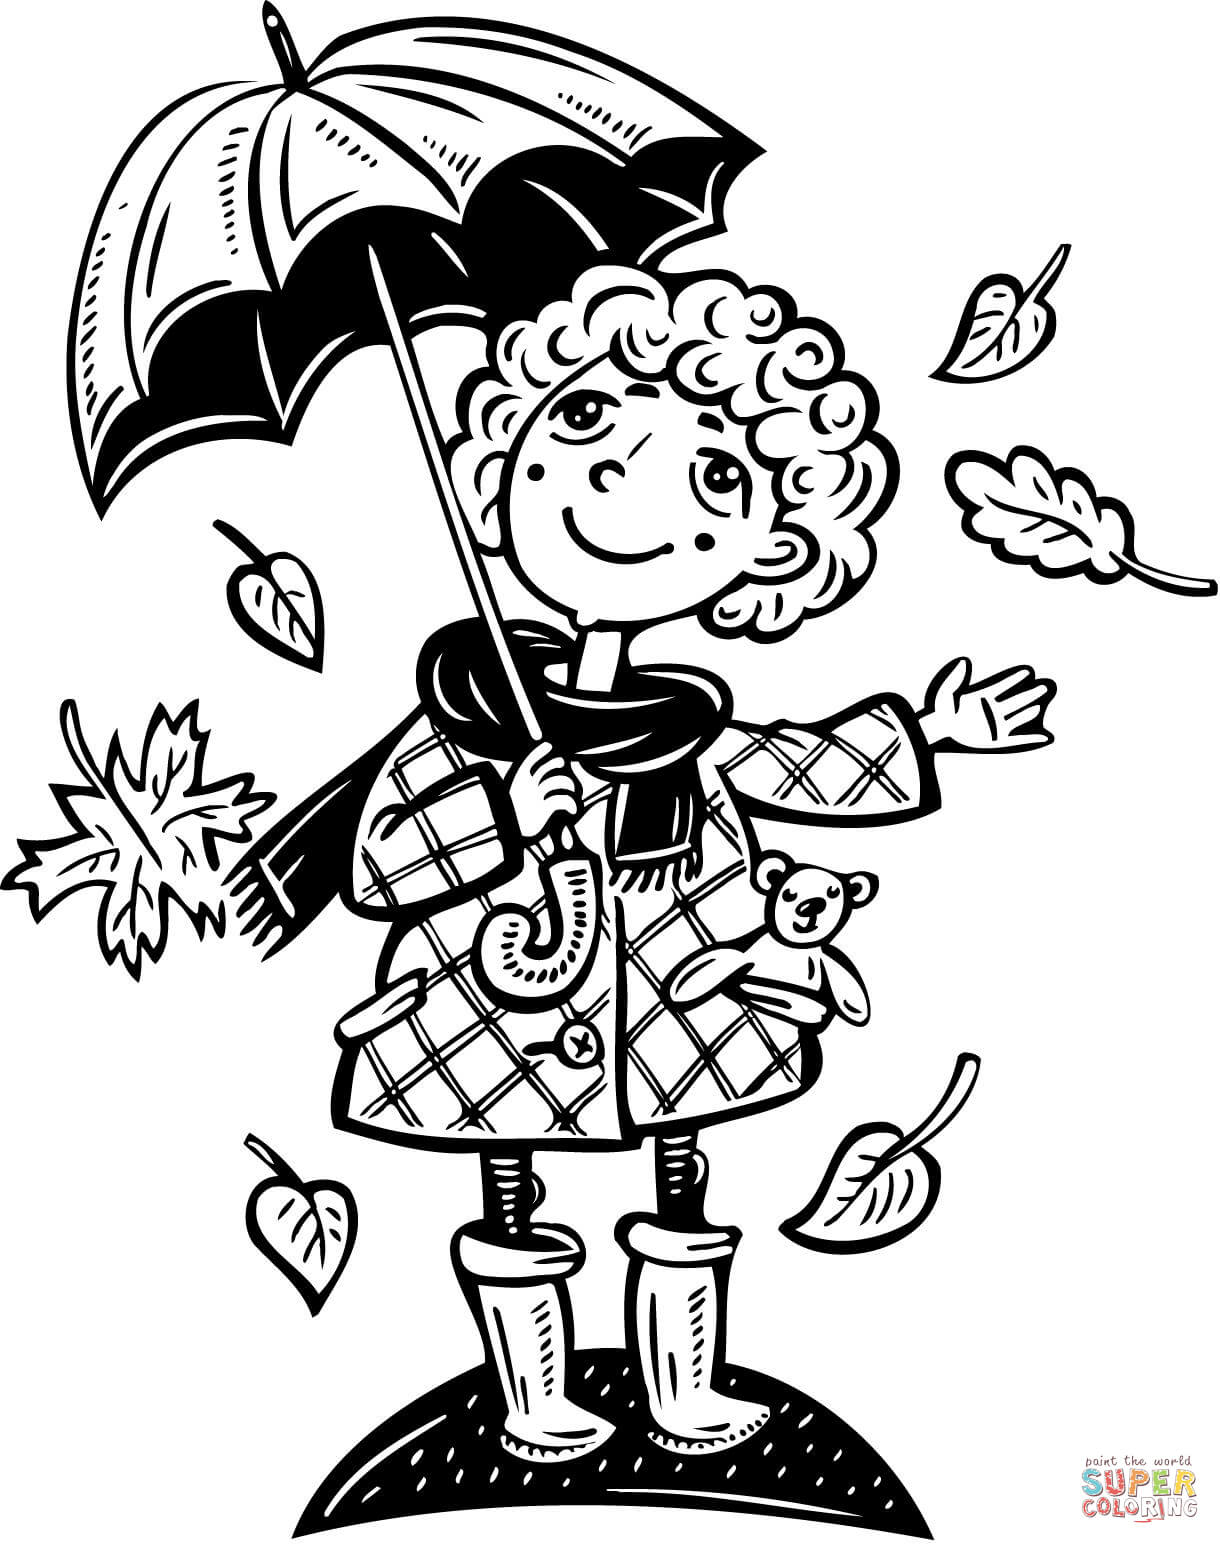 فتاة تحمل مظلة وأوراقها تتساقط من الخريف